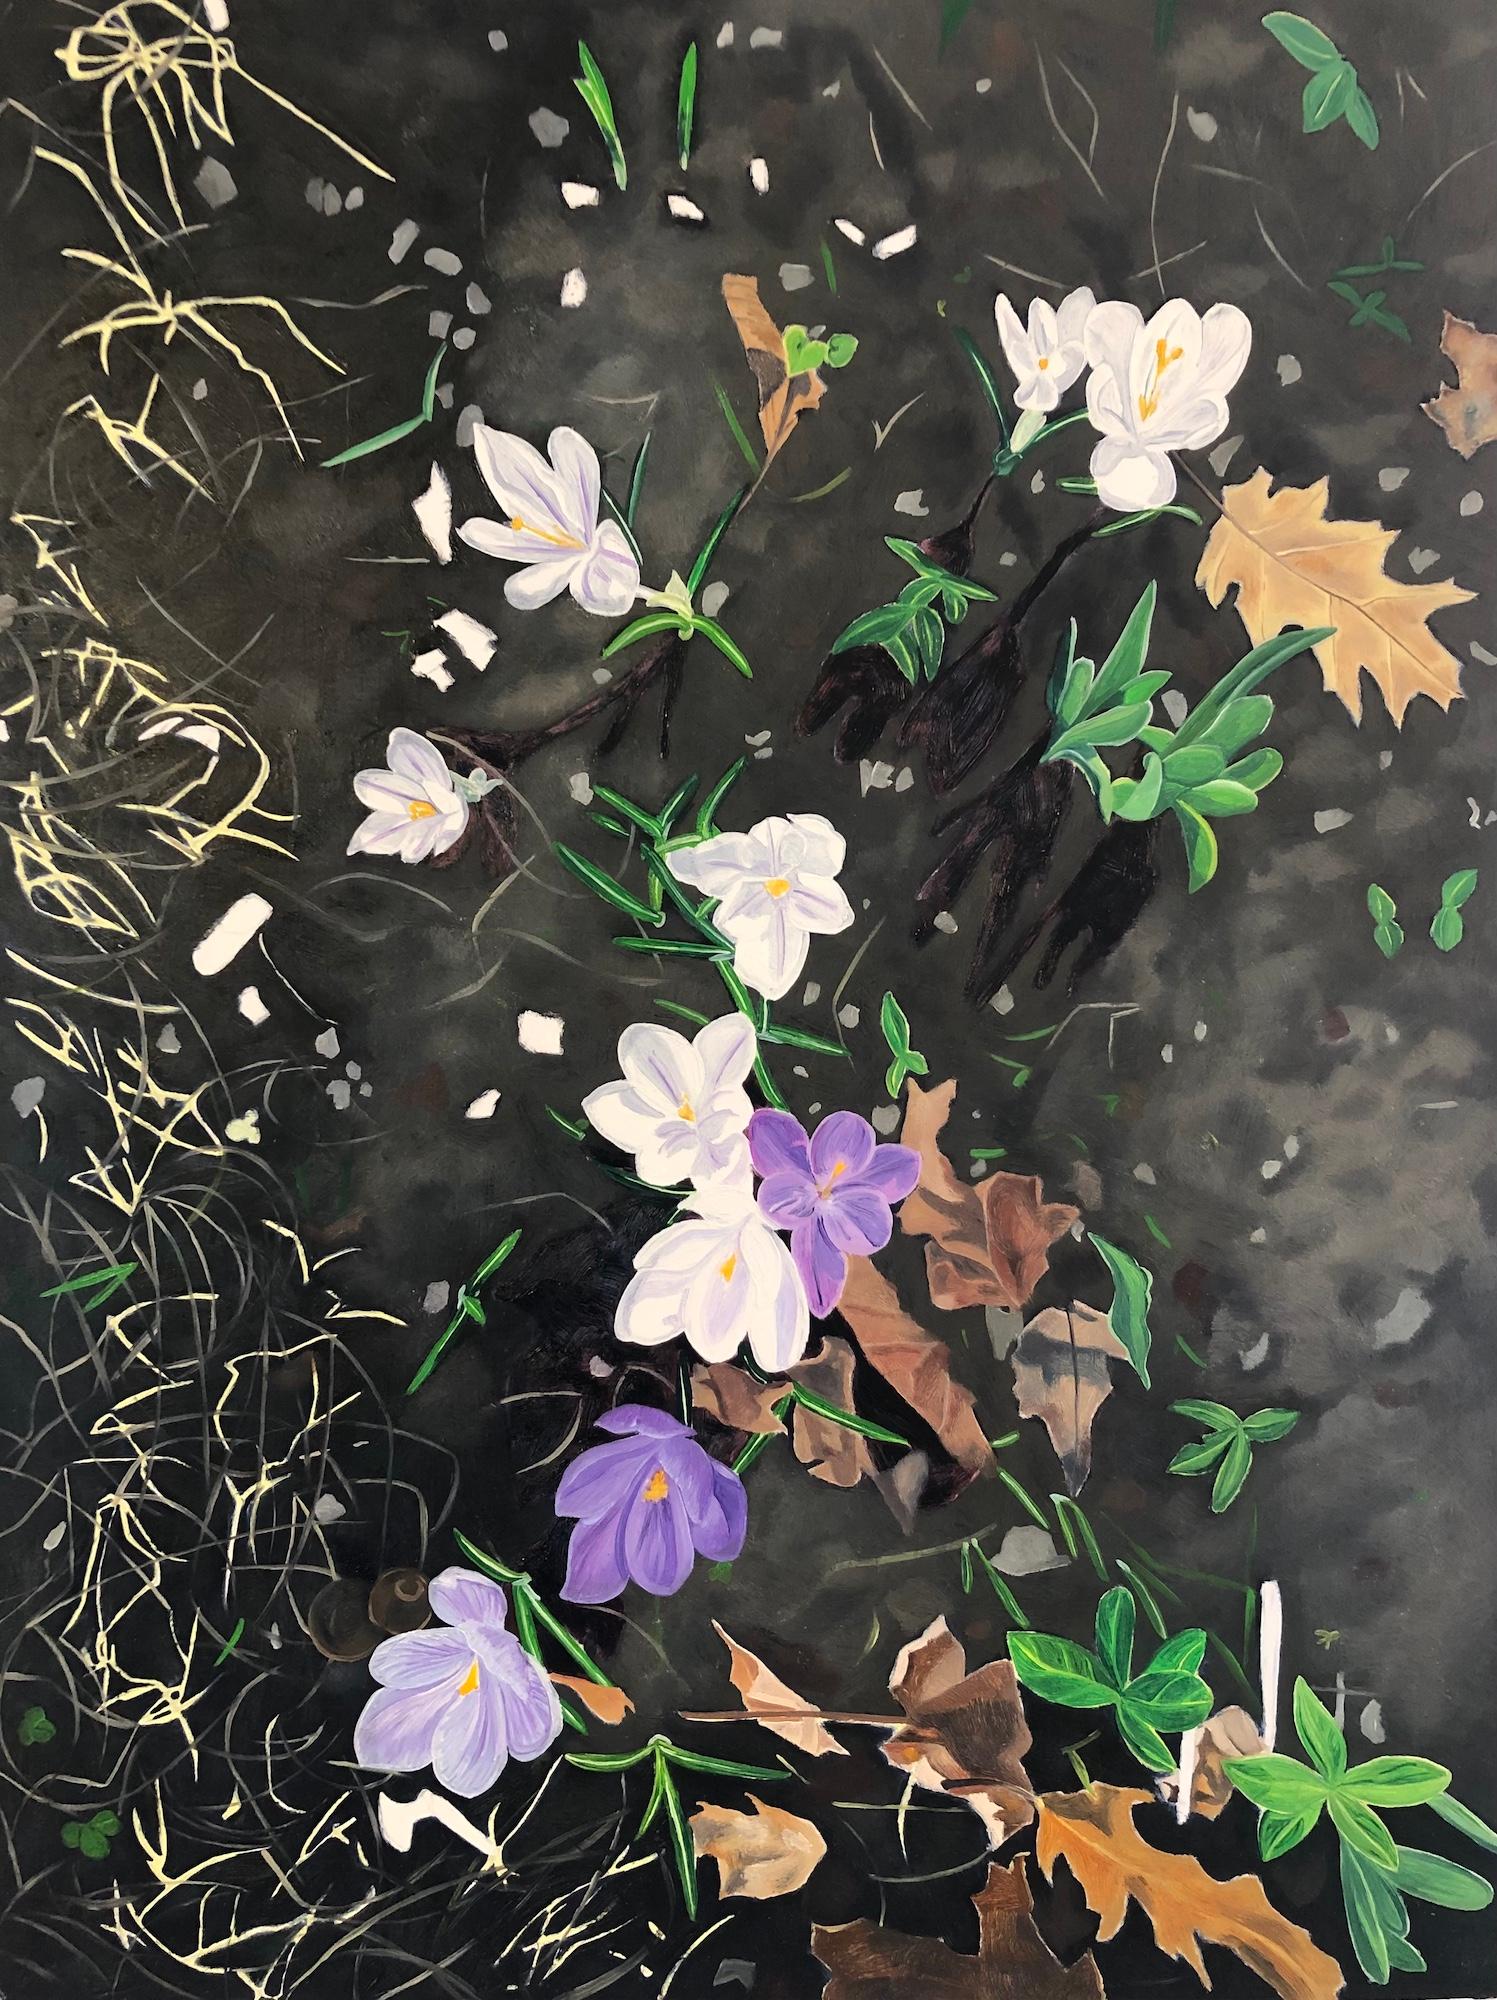 Amanda Acker Landscape Painting - Crocus Spoke, Purple, White Flowers in Dark Soil, Green Grass, Leaves, Botanical